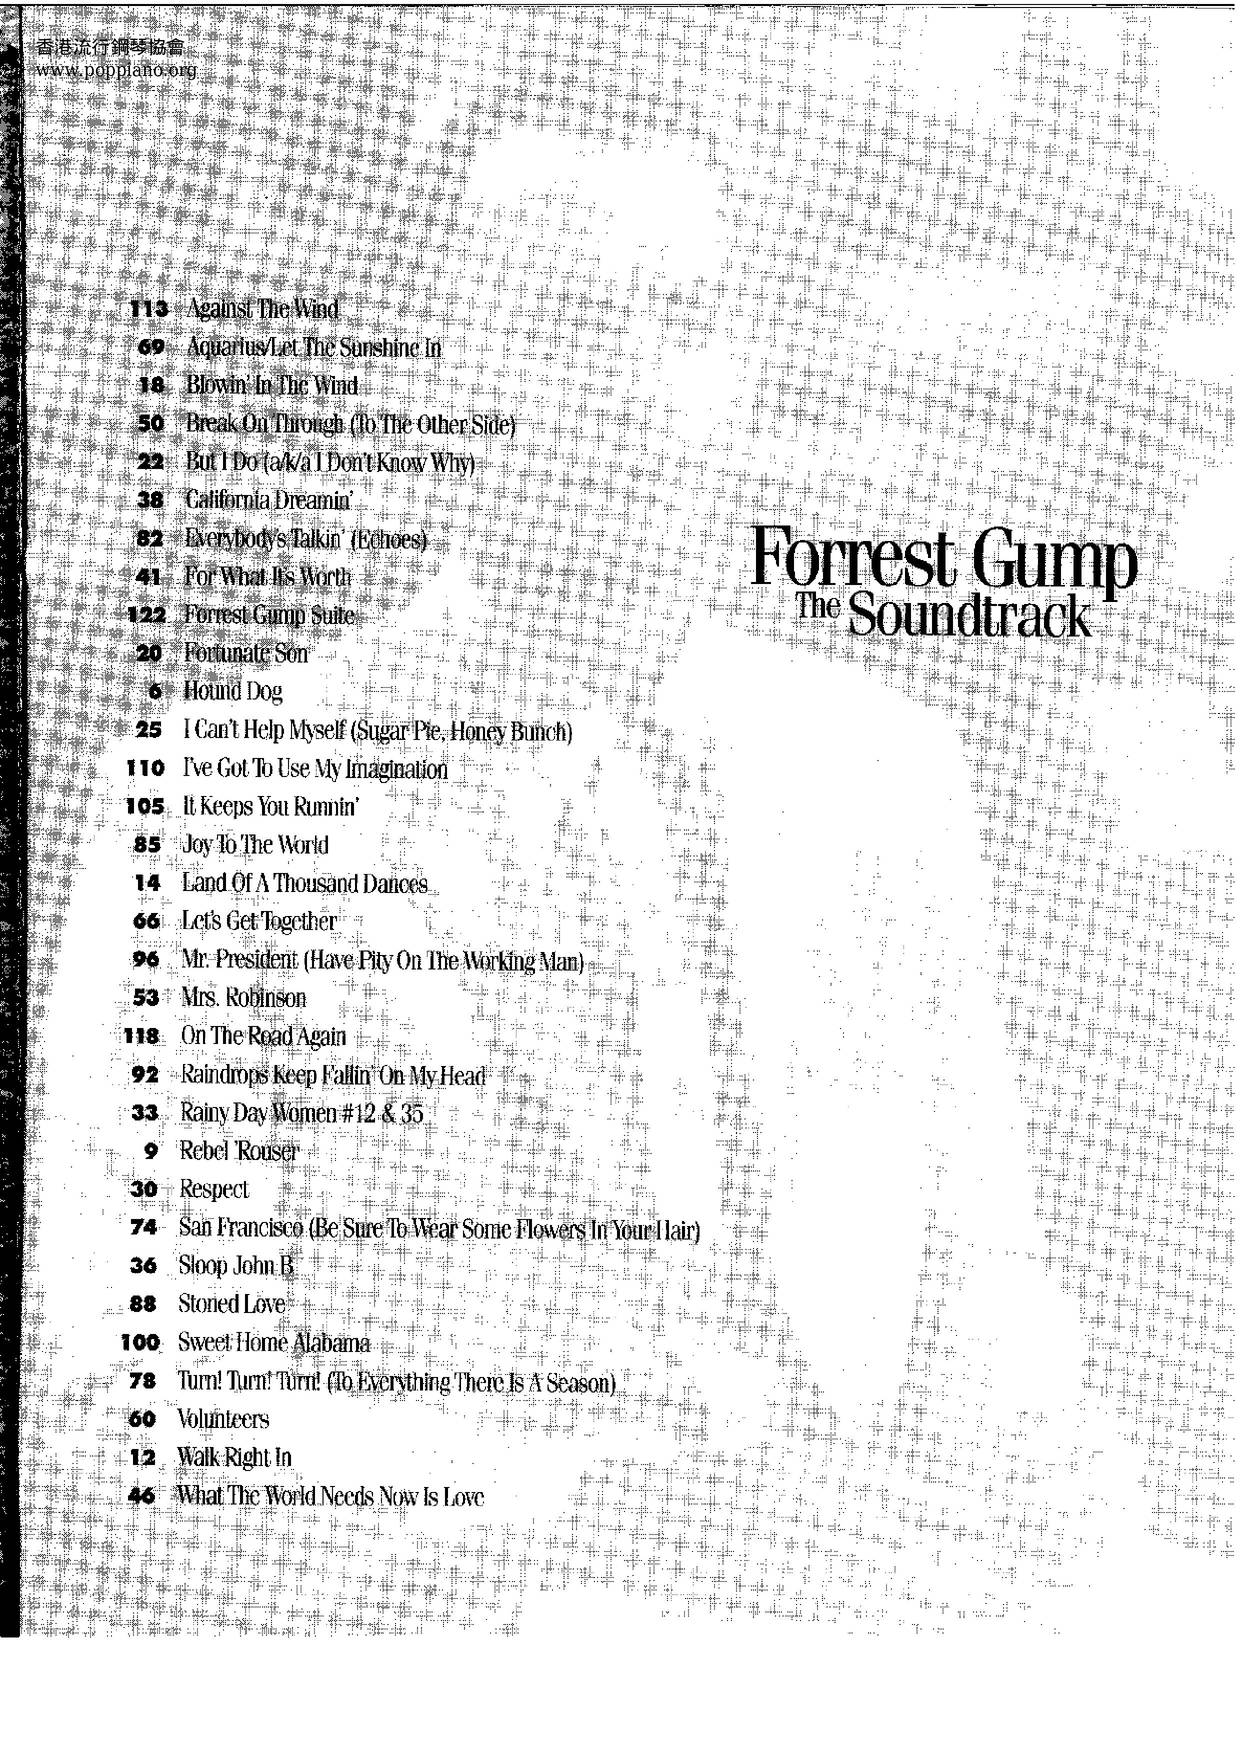 Forest Gump Soundtrack 130 Pages Score